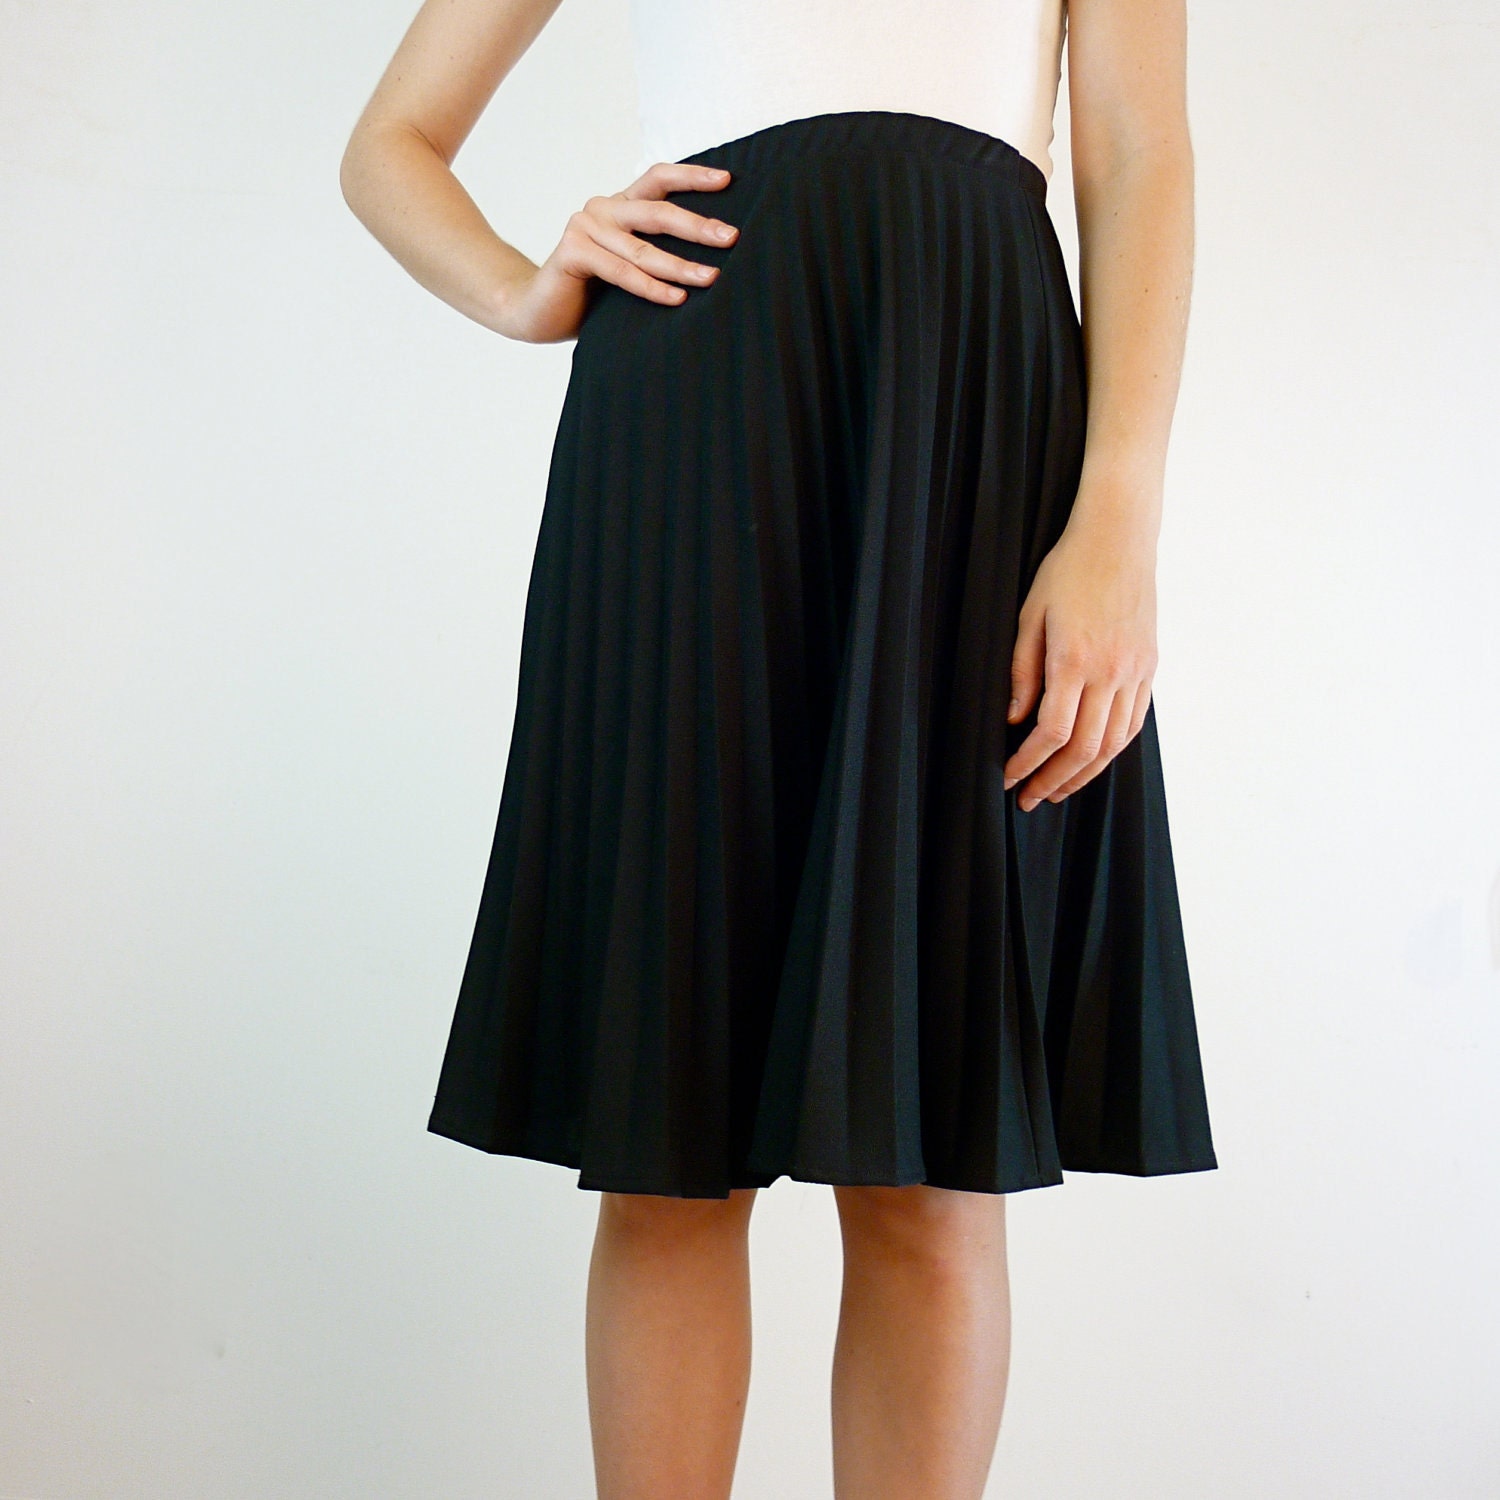 Black Pleated Skirt / Plus Size Accordion Pleated Skirt